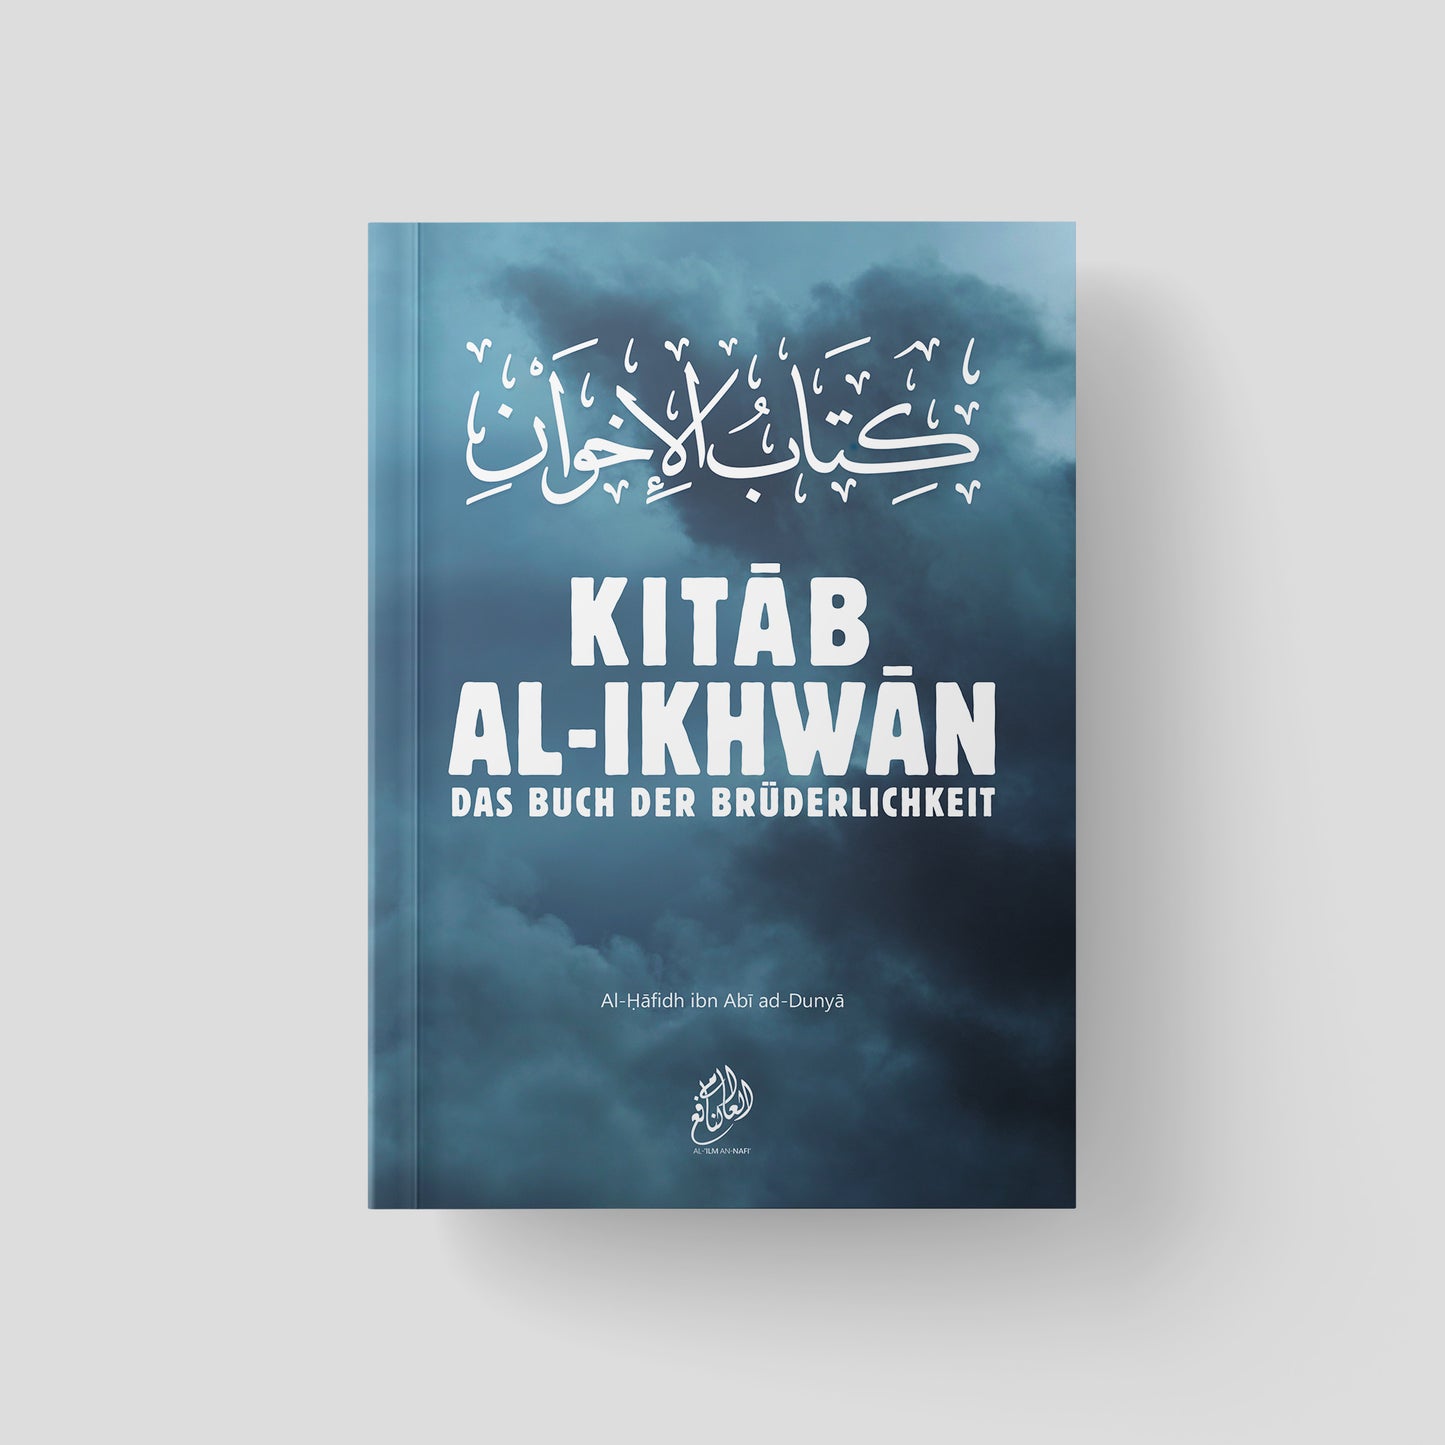 Kitab al-Ikhwan: Das Buch der Brüderlichkeit